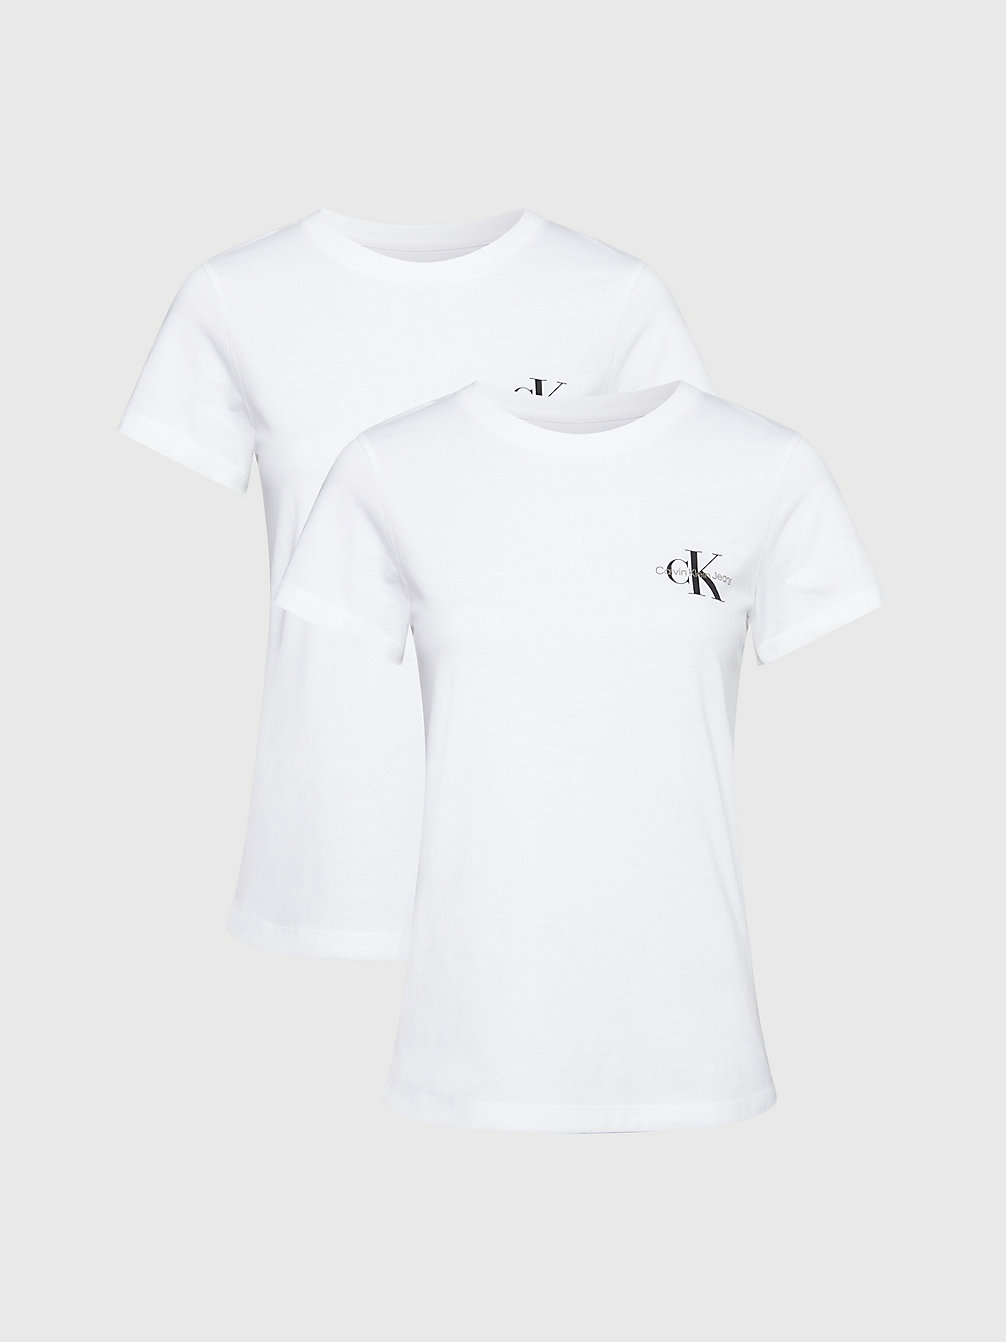 • T-Shirt Slim In Confezione Da 2 > BRIGHT WHITE / BRIGHT WHITE > undefined donna > Calvin Klein